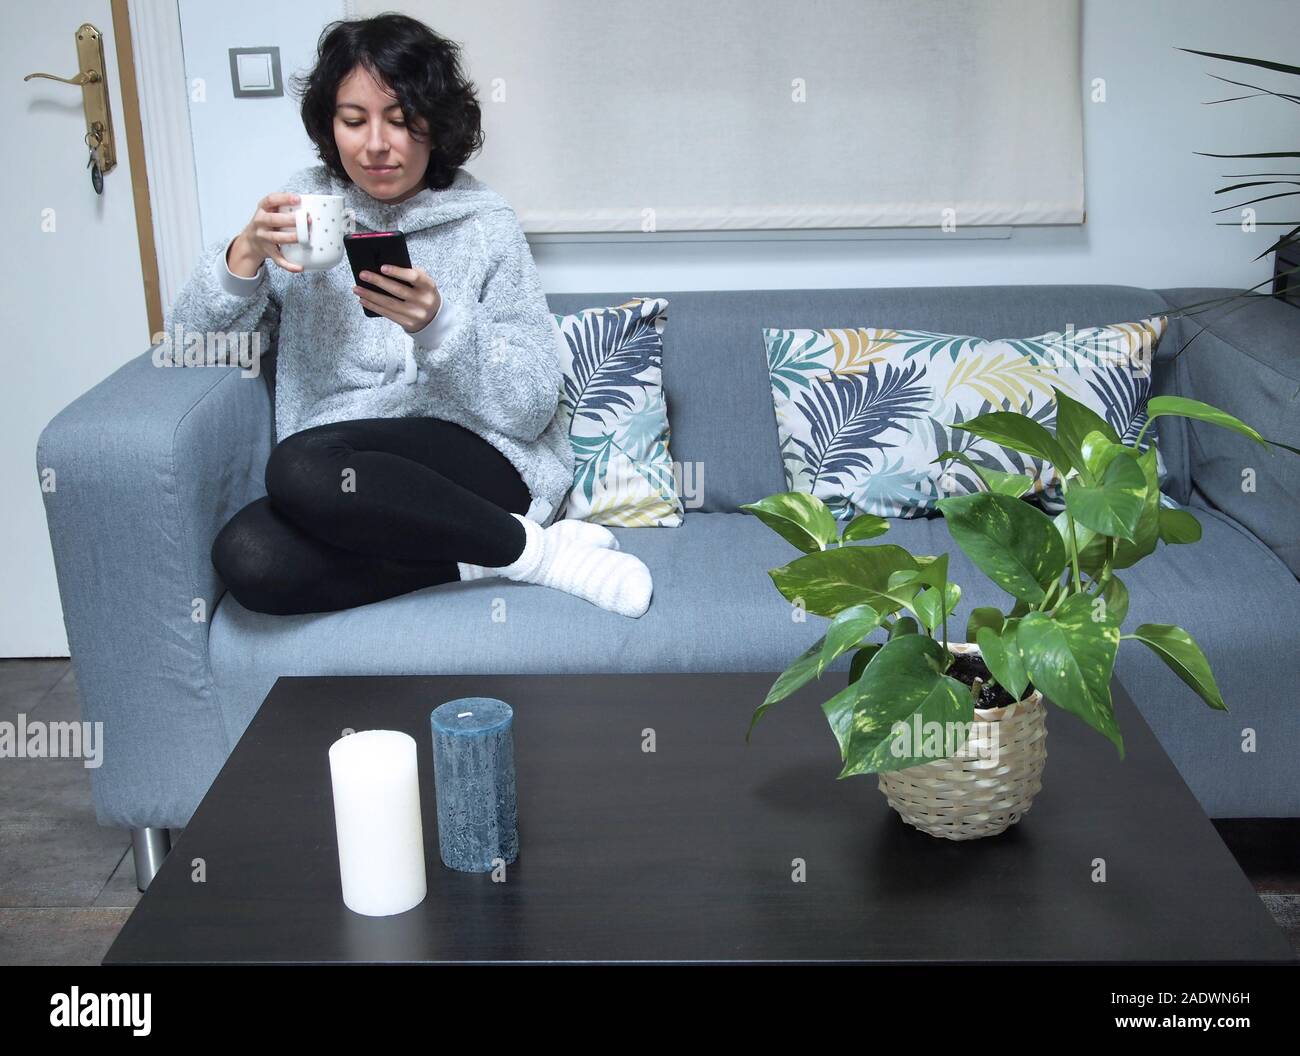 Junge kaukasier Frau auf Ihr Telefon suchen und trinken Kaffee im Schlafanzug auf dem Sofa sitzen. Sie ist zu Hause, gemütliche Konzept. Stockfoto